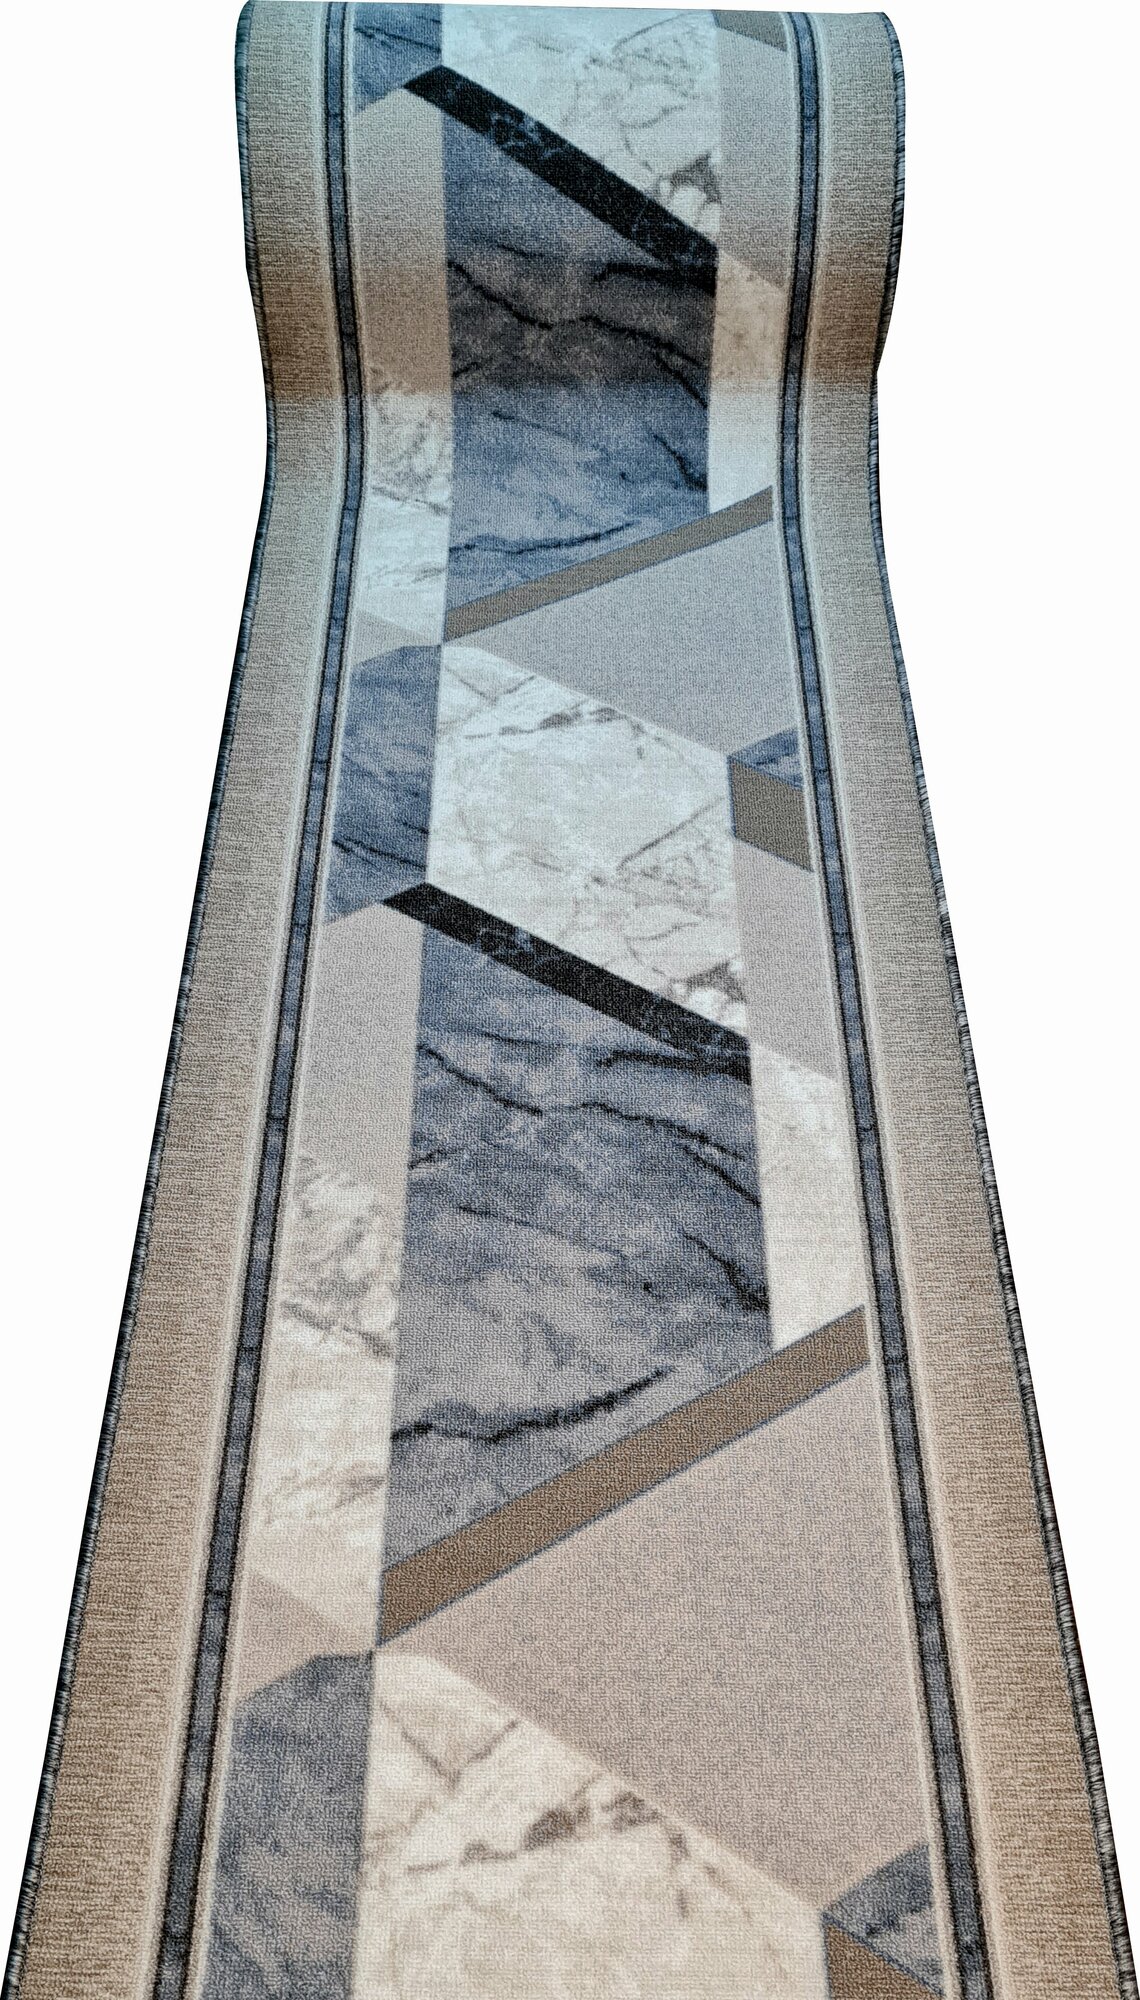 Ковровая дорожка ширина 60 см, длина 340 см / ковровая дорожка на войлочной основе / ковровая дорожка ширина 0,6 м